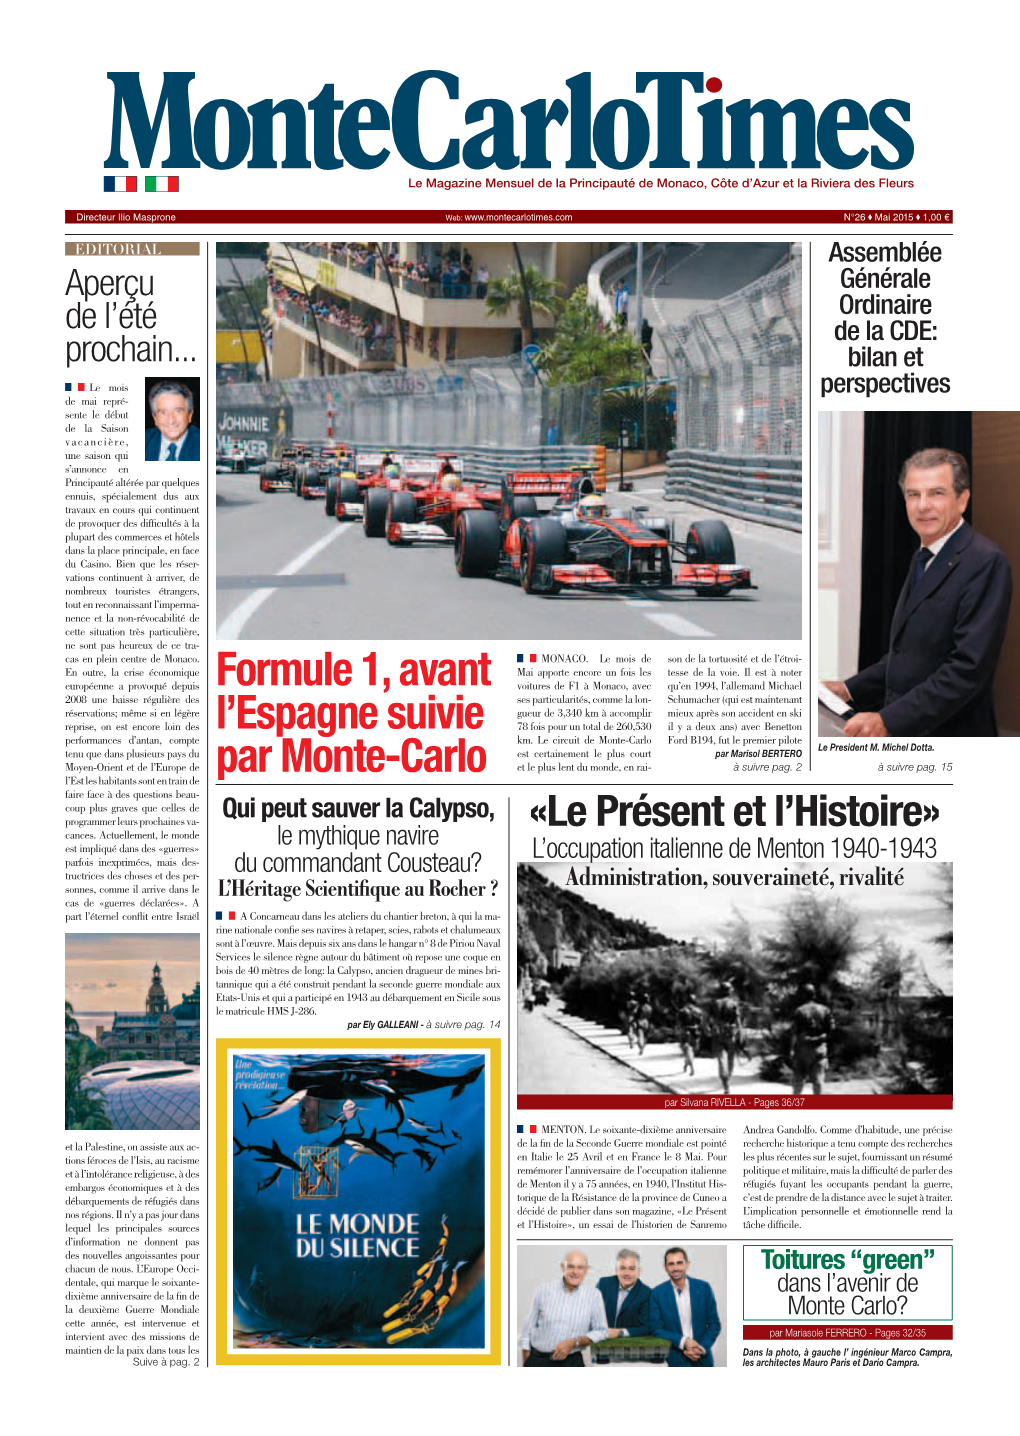 Formule 1, Avant L'espagne Suivie Par Monte-Carlo